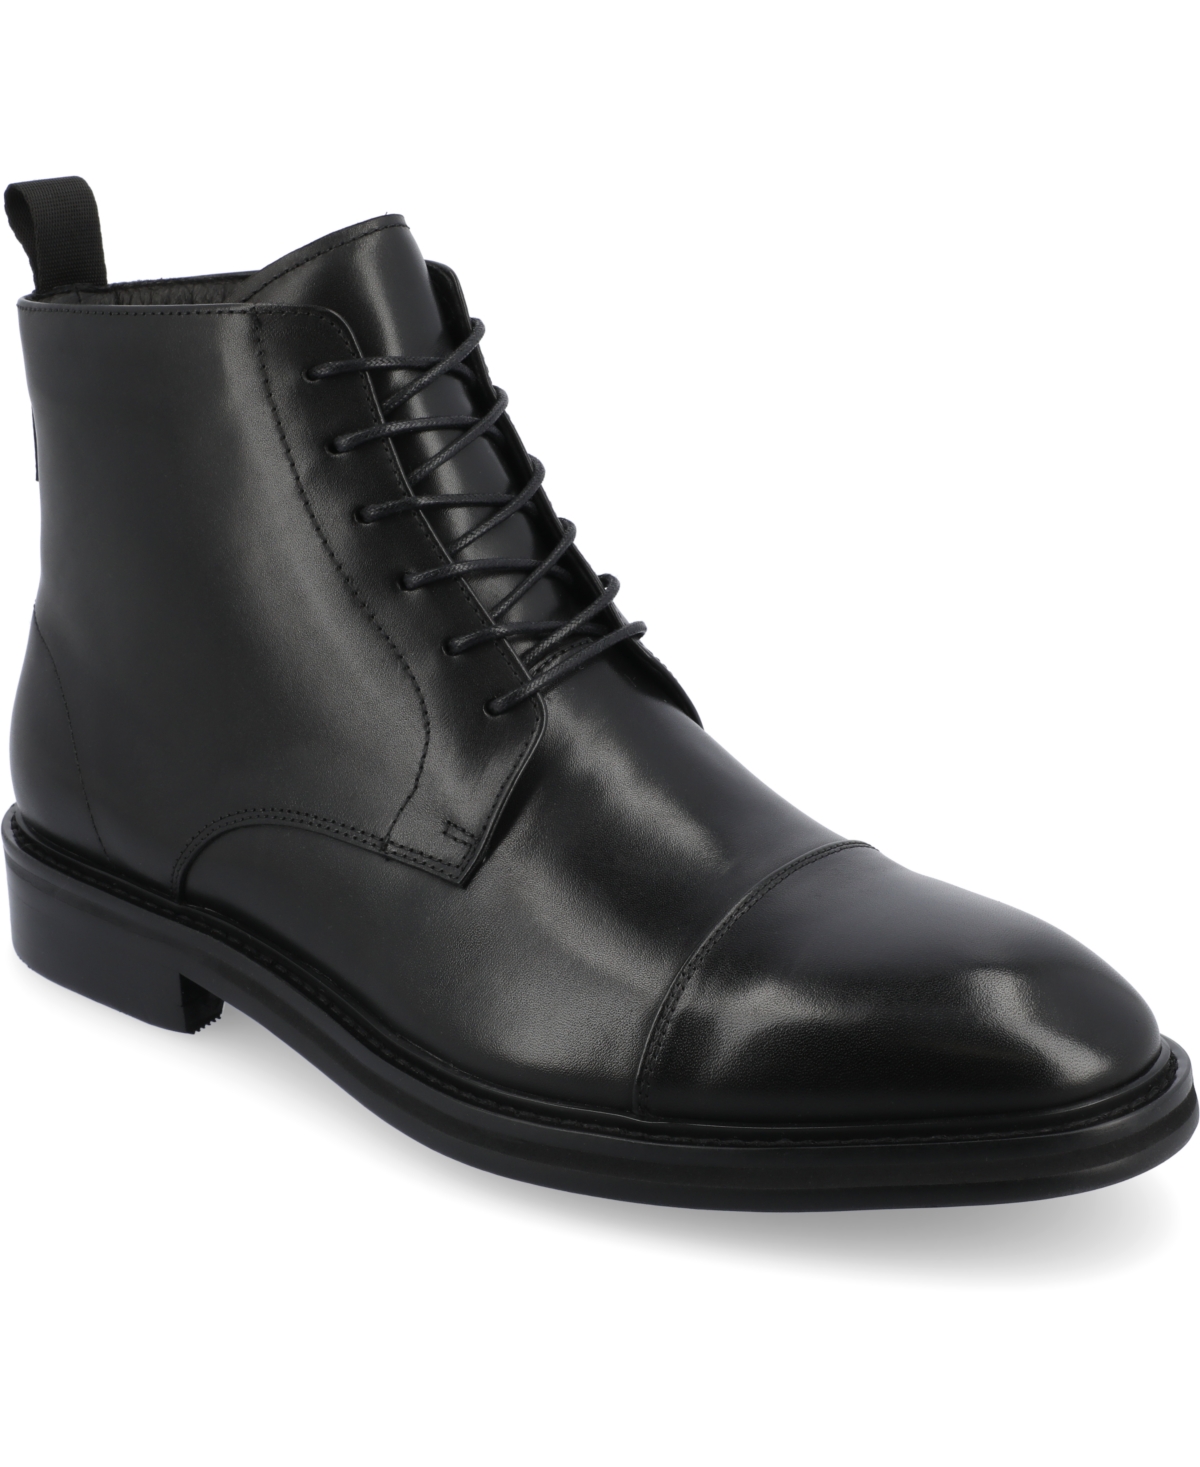 365 Men's Model 003 Cap-Toe Ankle Boots - Black